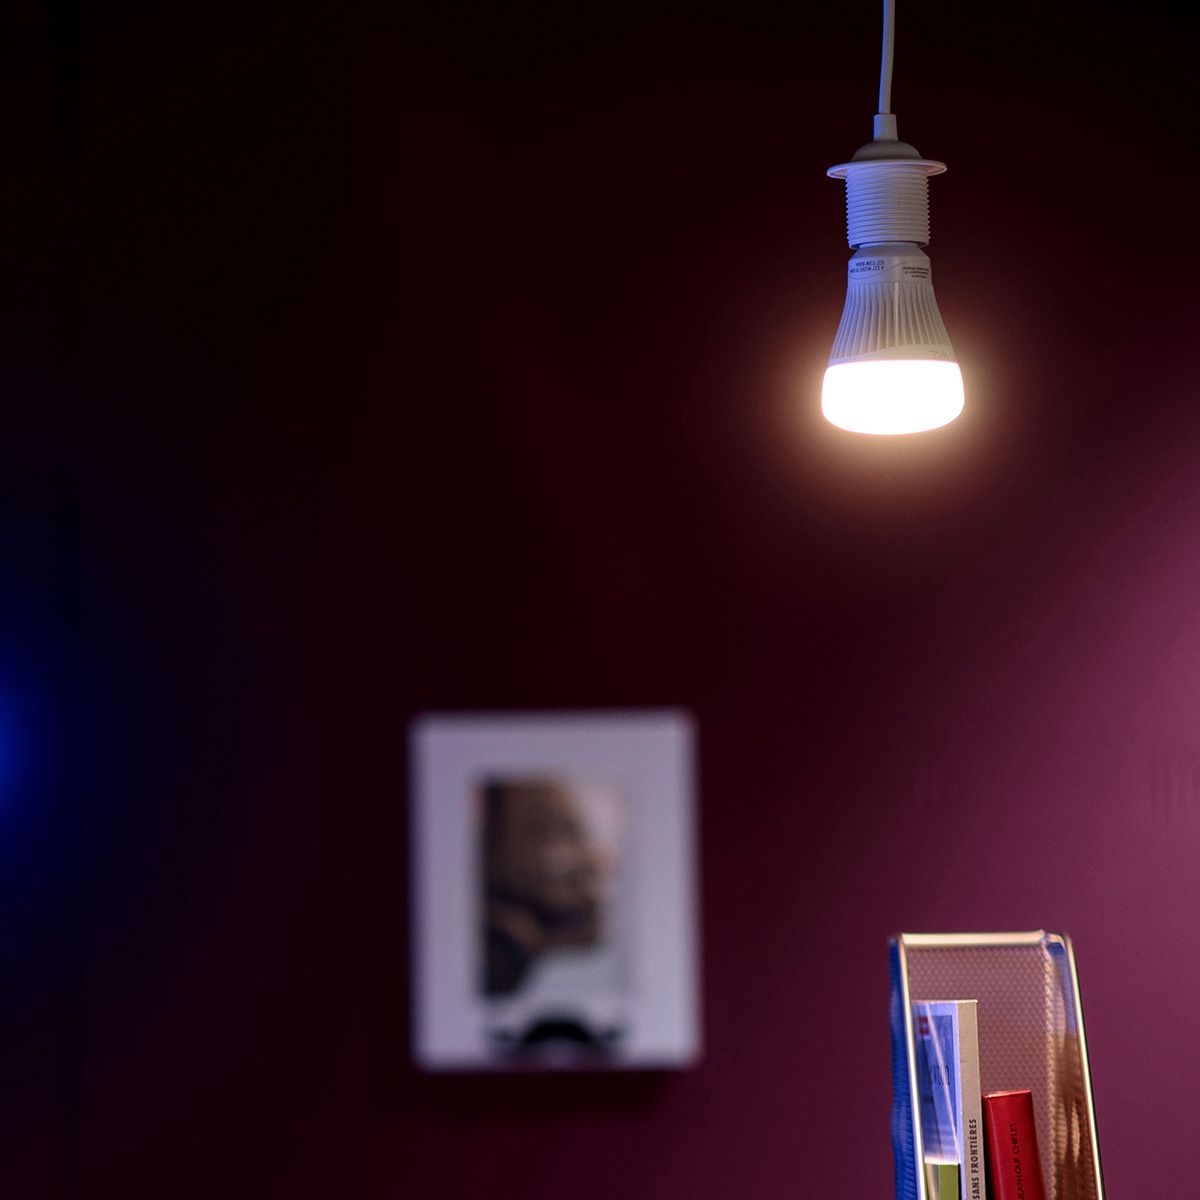 WiZ ampoule LED Connectée Wi-Fi Couleur E27, équivalent 60W, 806 lumen,  fonctionne avec Alexa, Google Assistant et Apple HomeKit